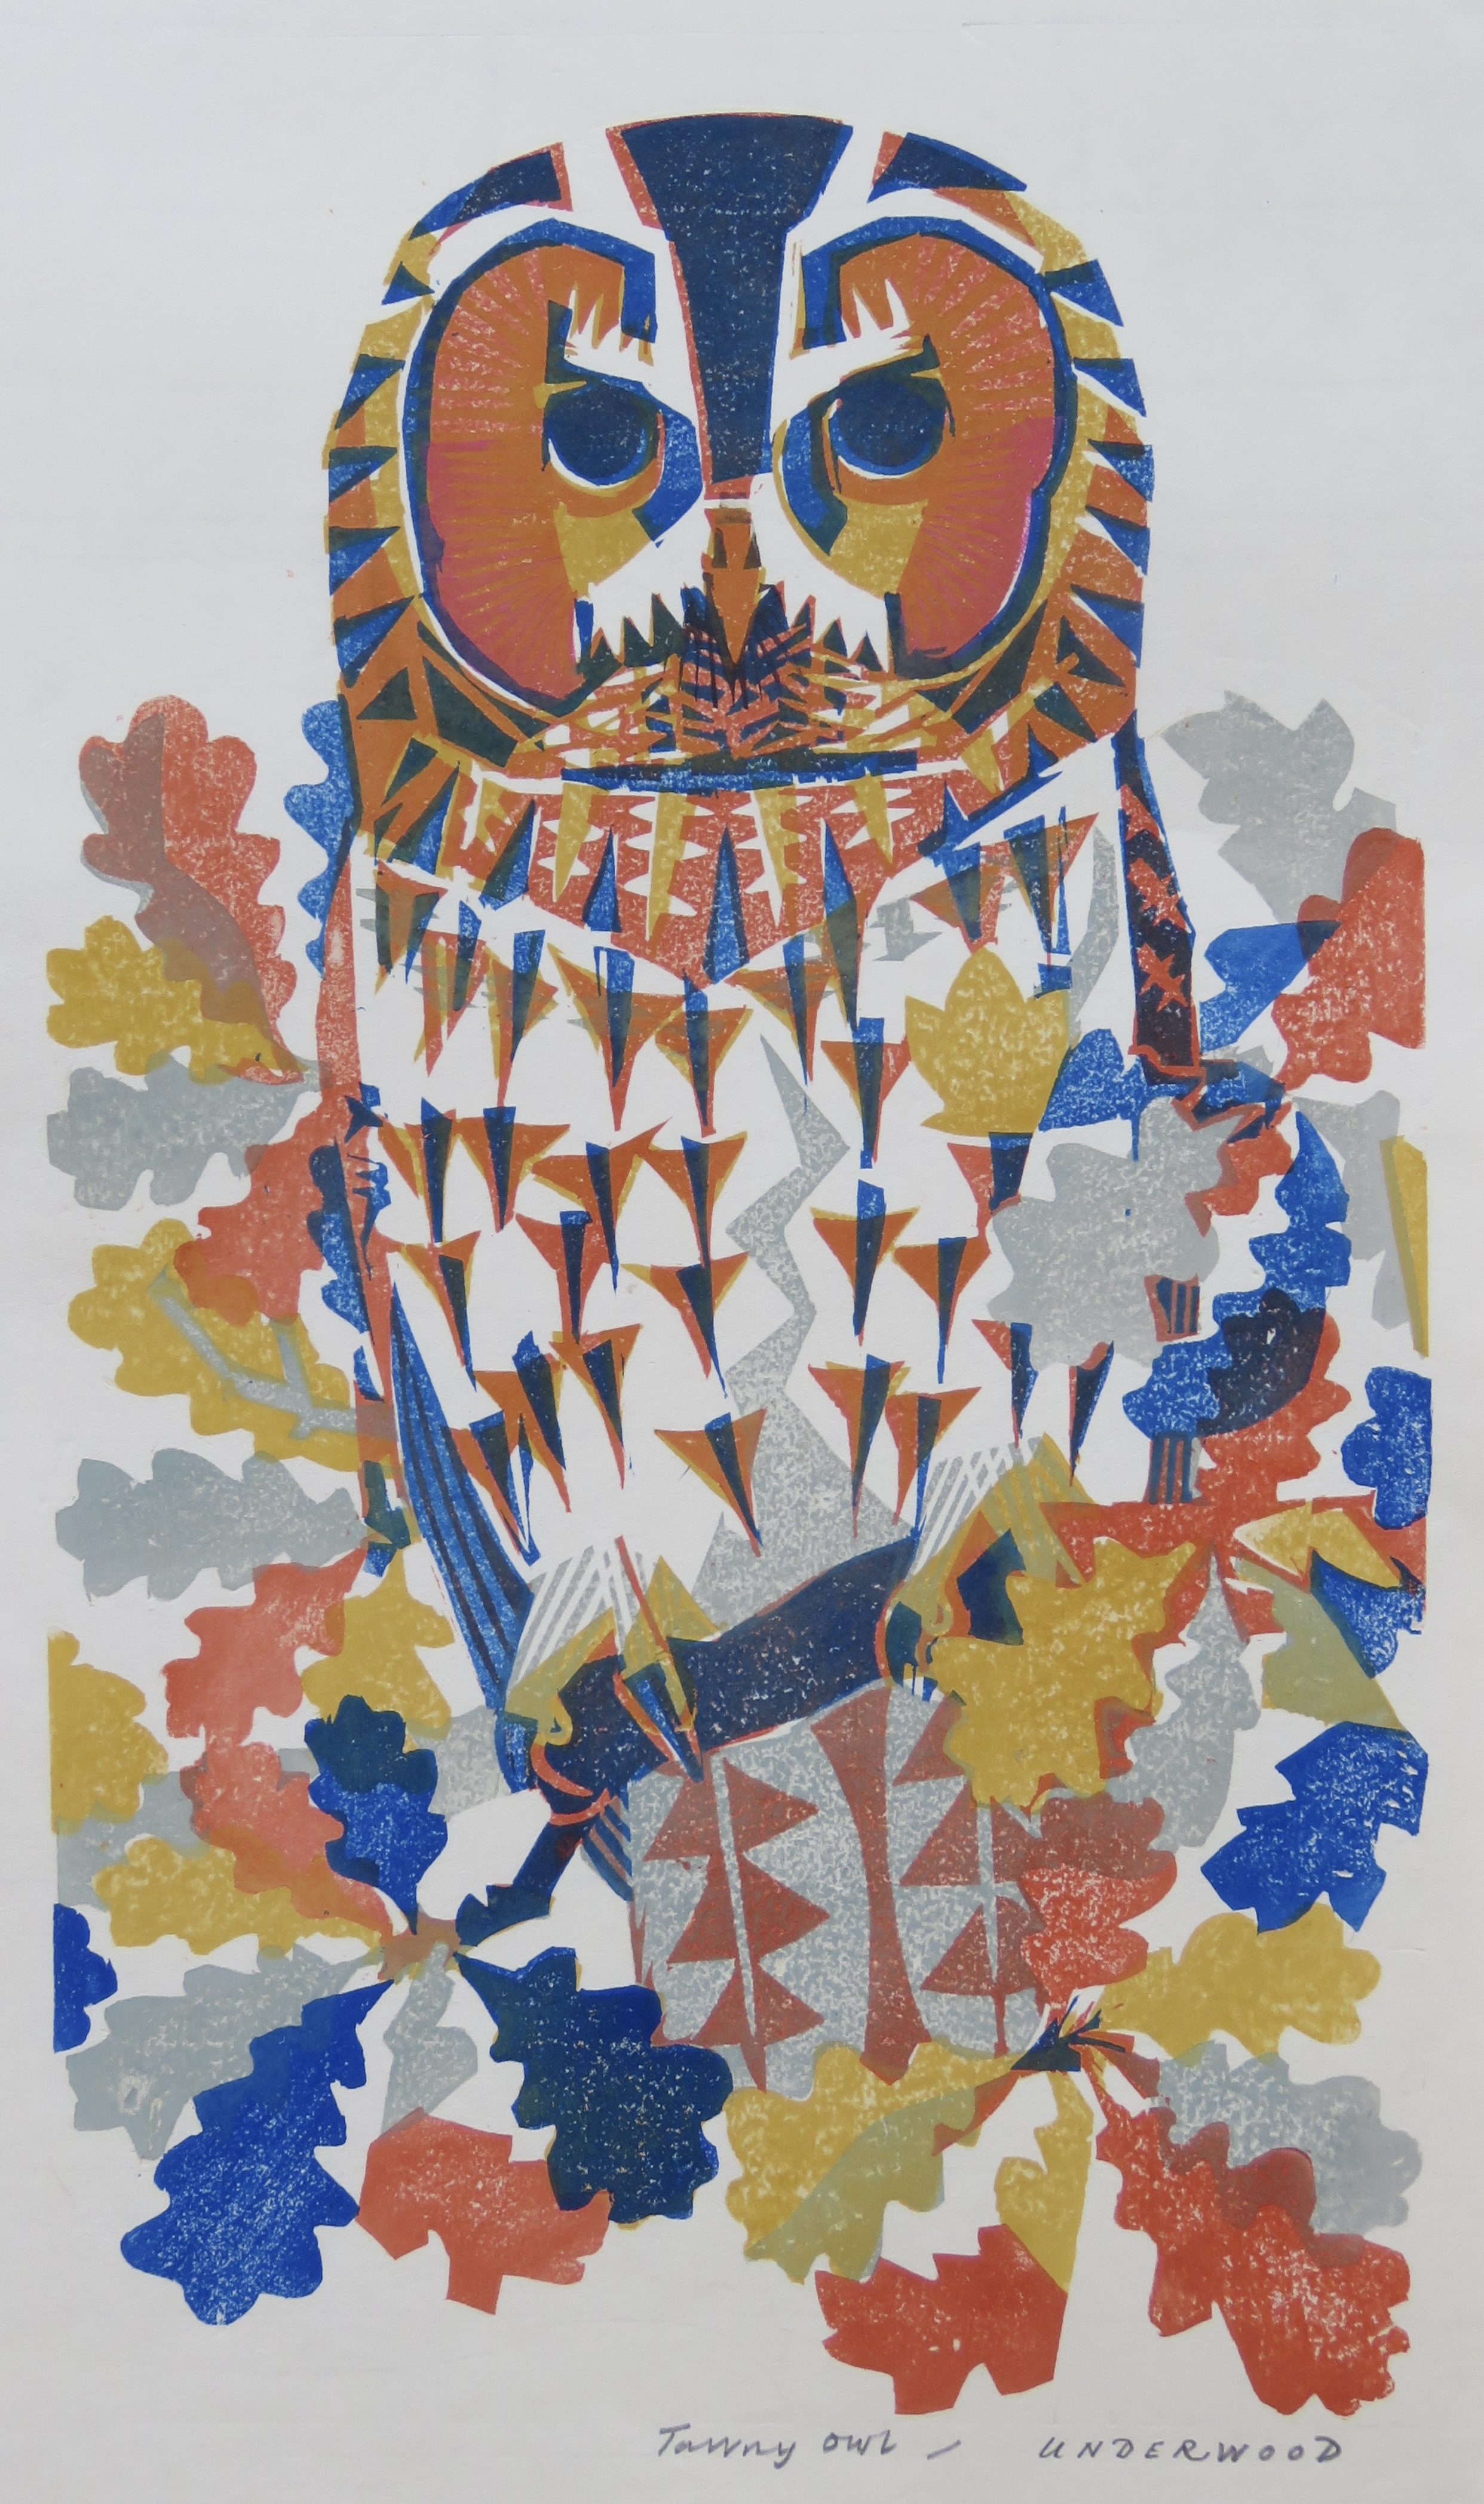 <p>Tawny Owl, a woodblock print by Matt Underwood</p>